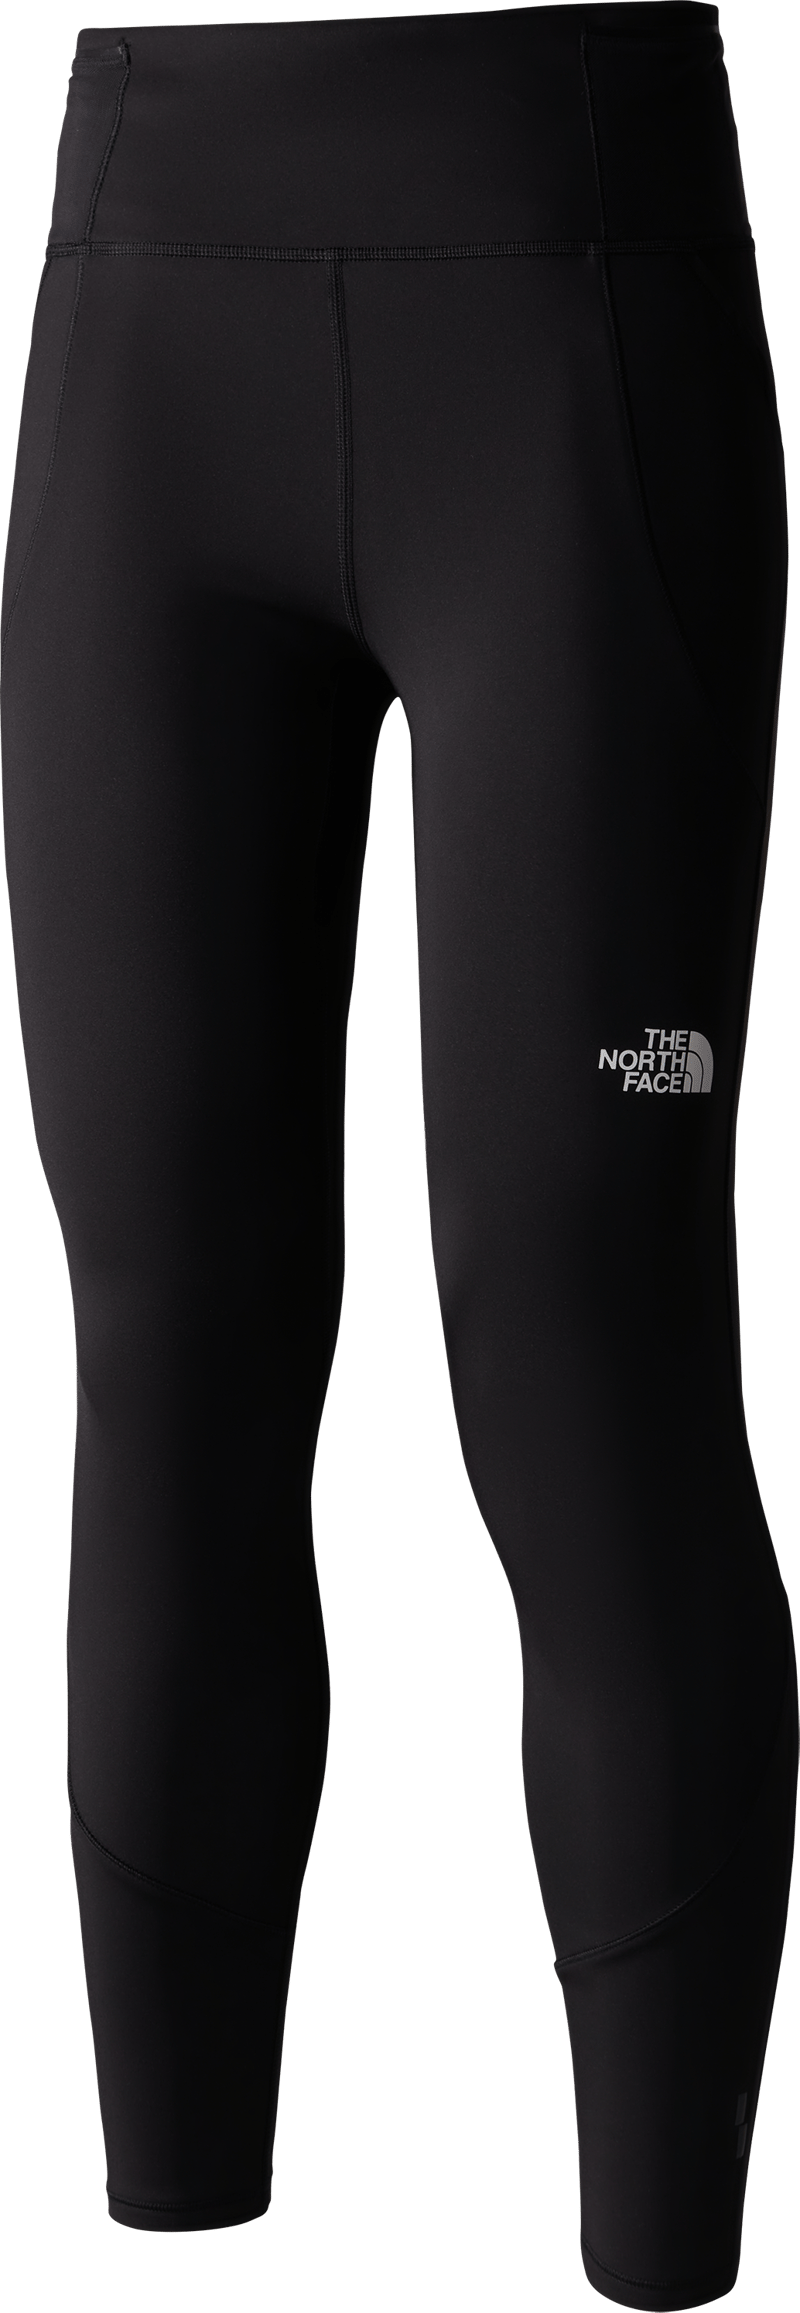 Women's Winter Warm Pro Leggings TNF BLACK